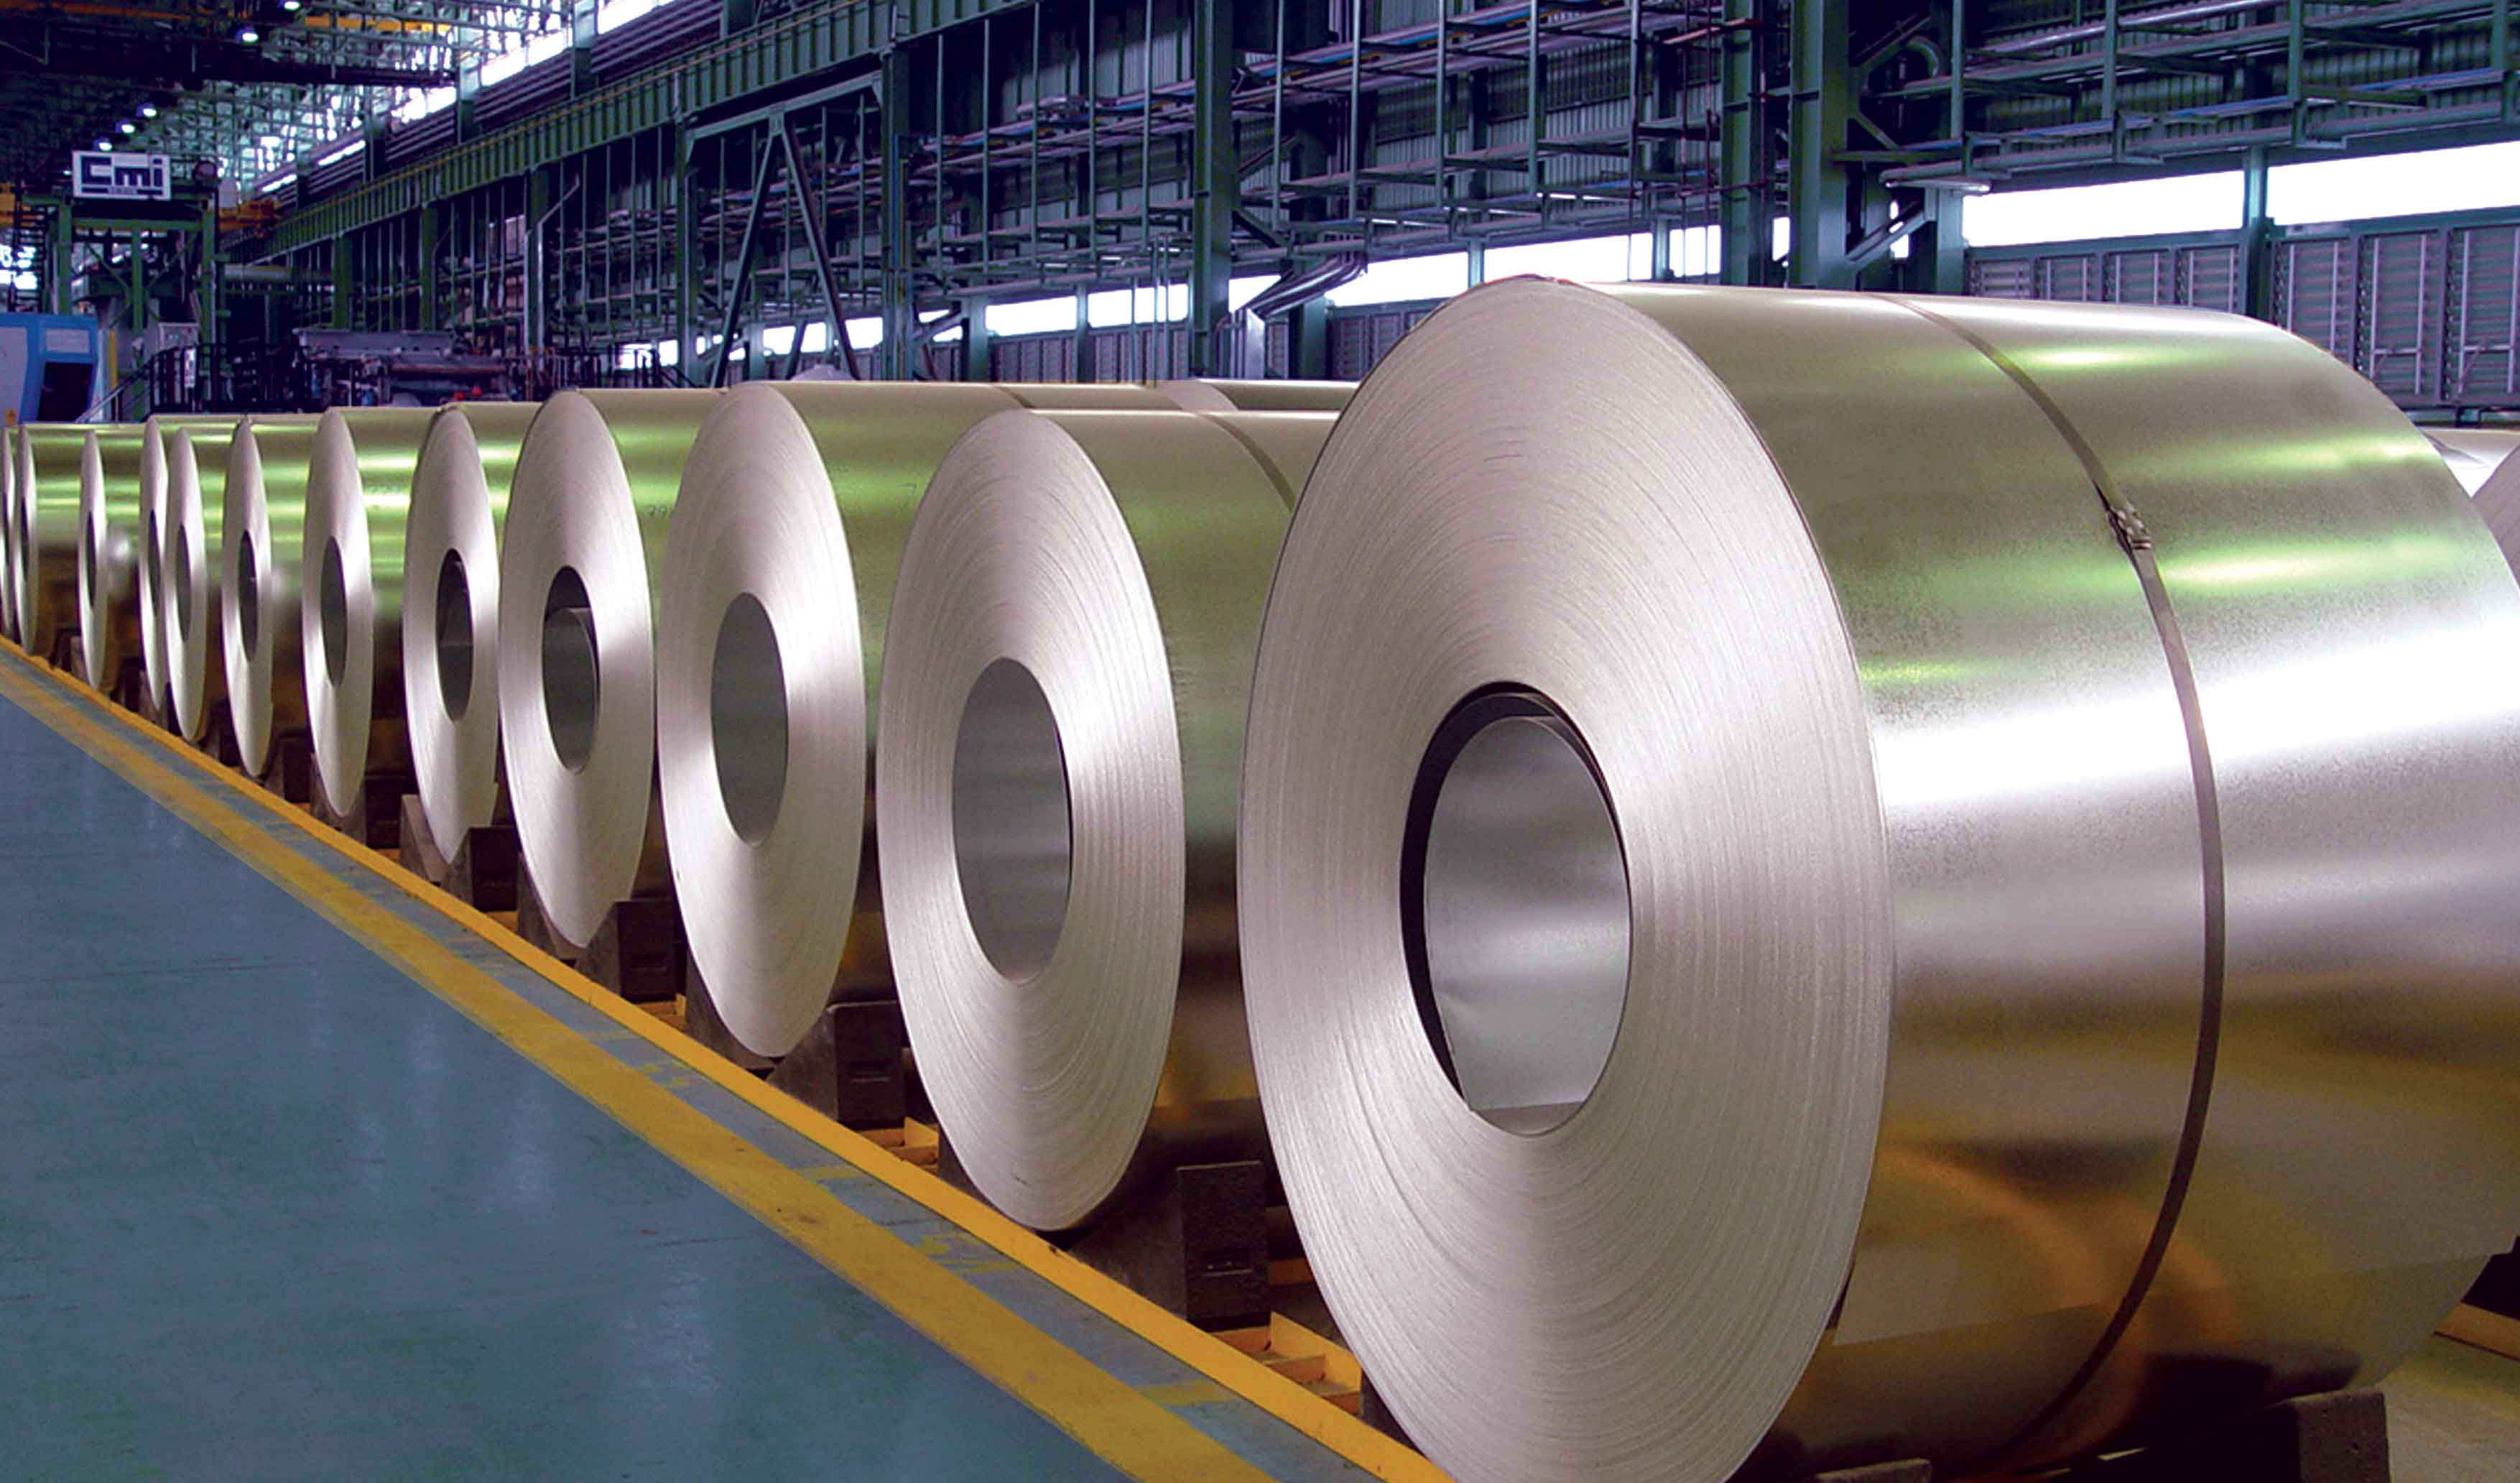 ایران در صدر تولید و صادرات فولاد خاورمیانه